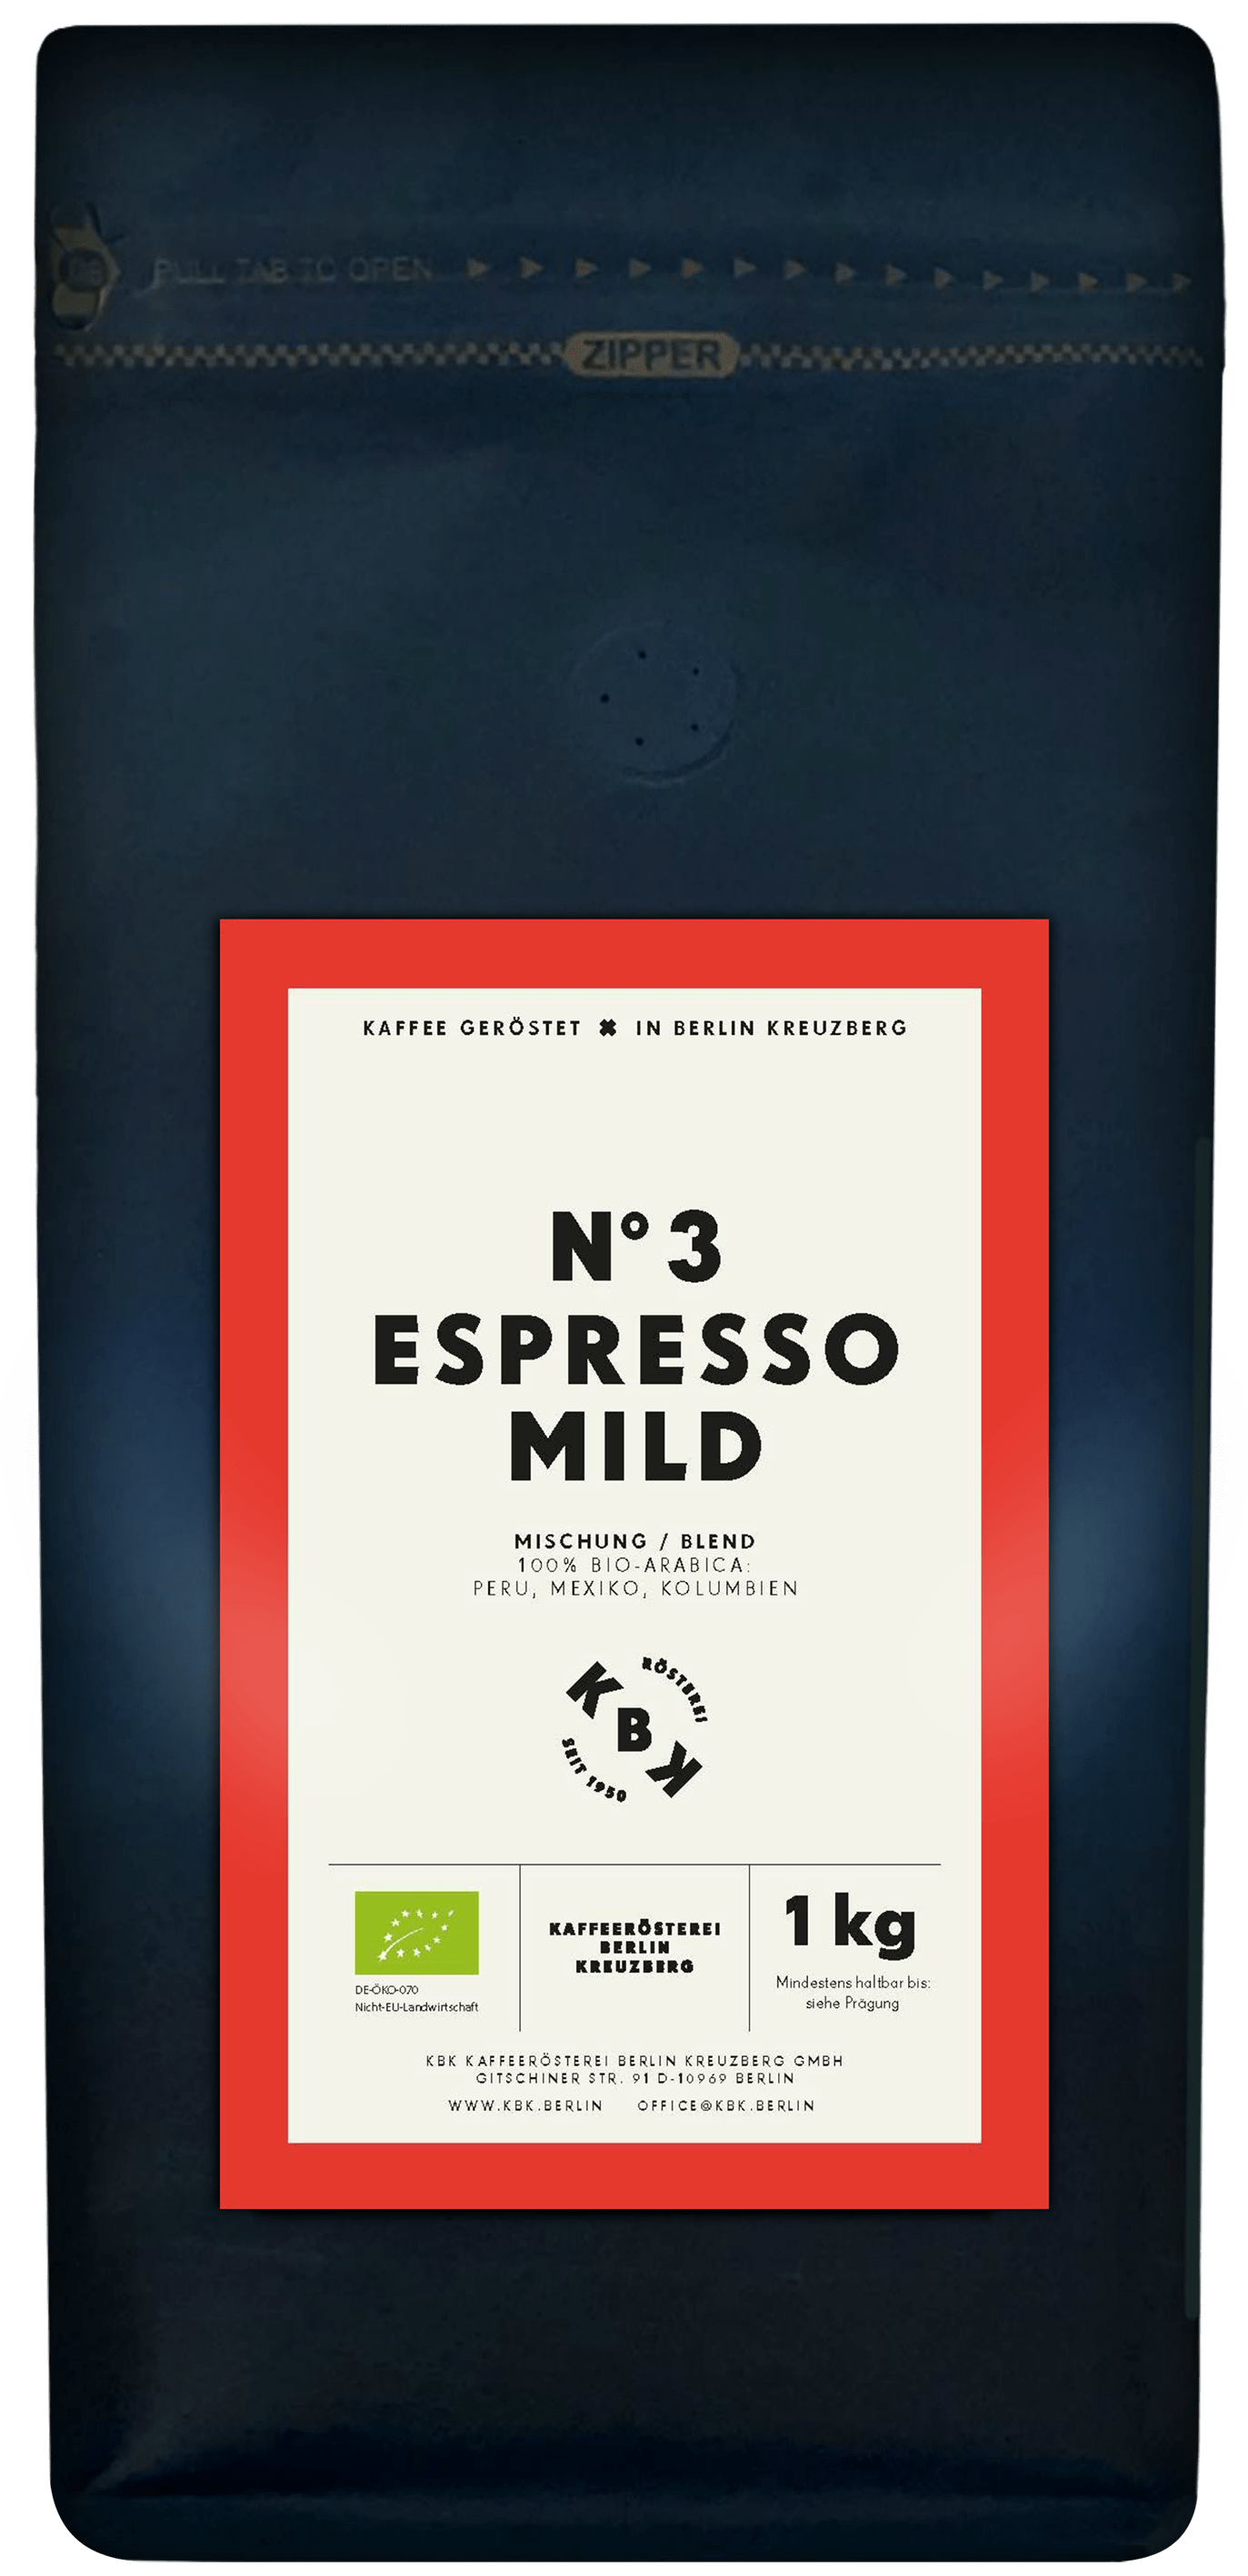 N°3 Espresso Mild